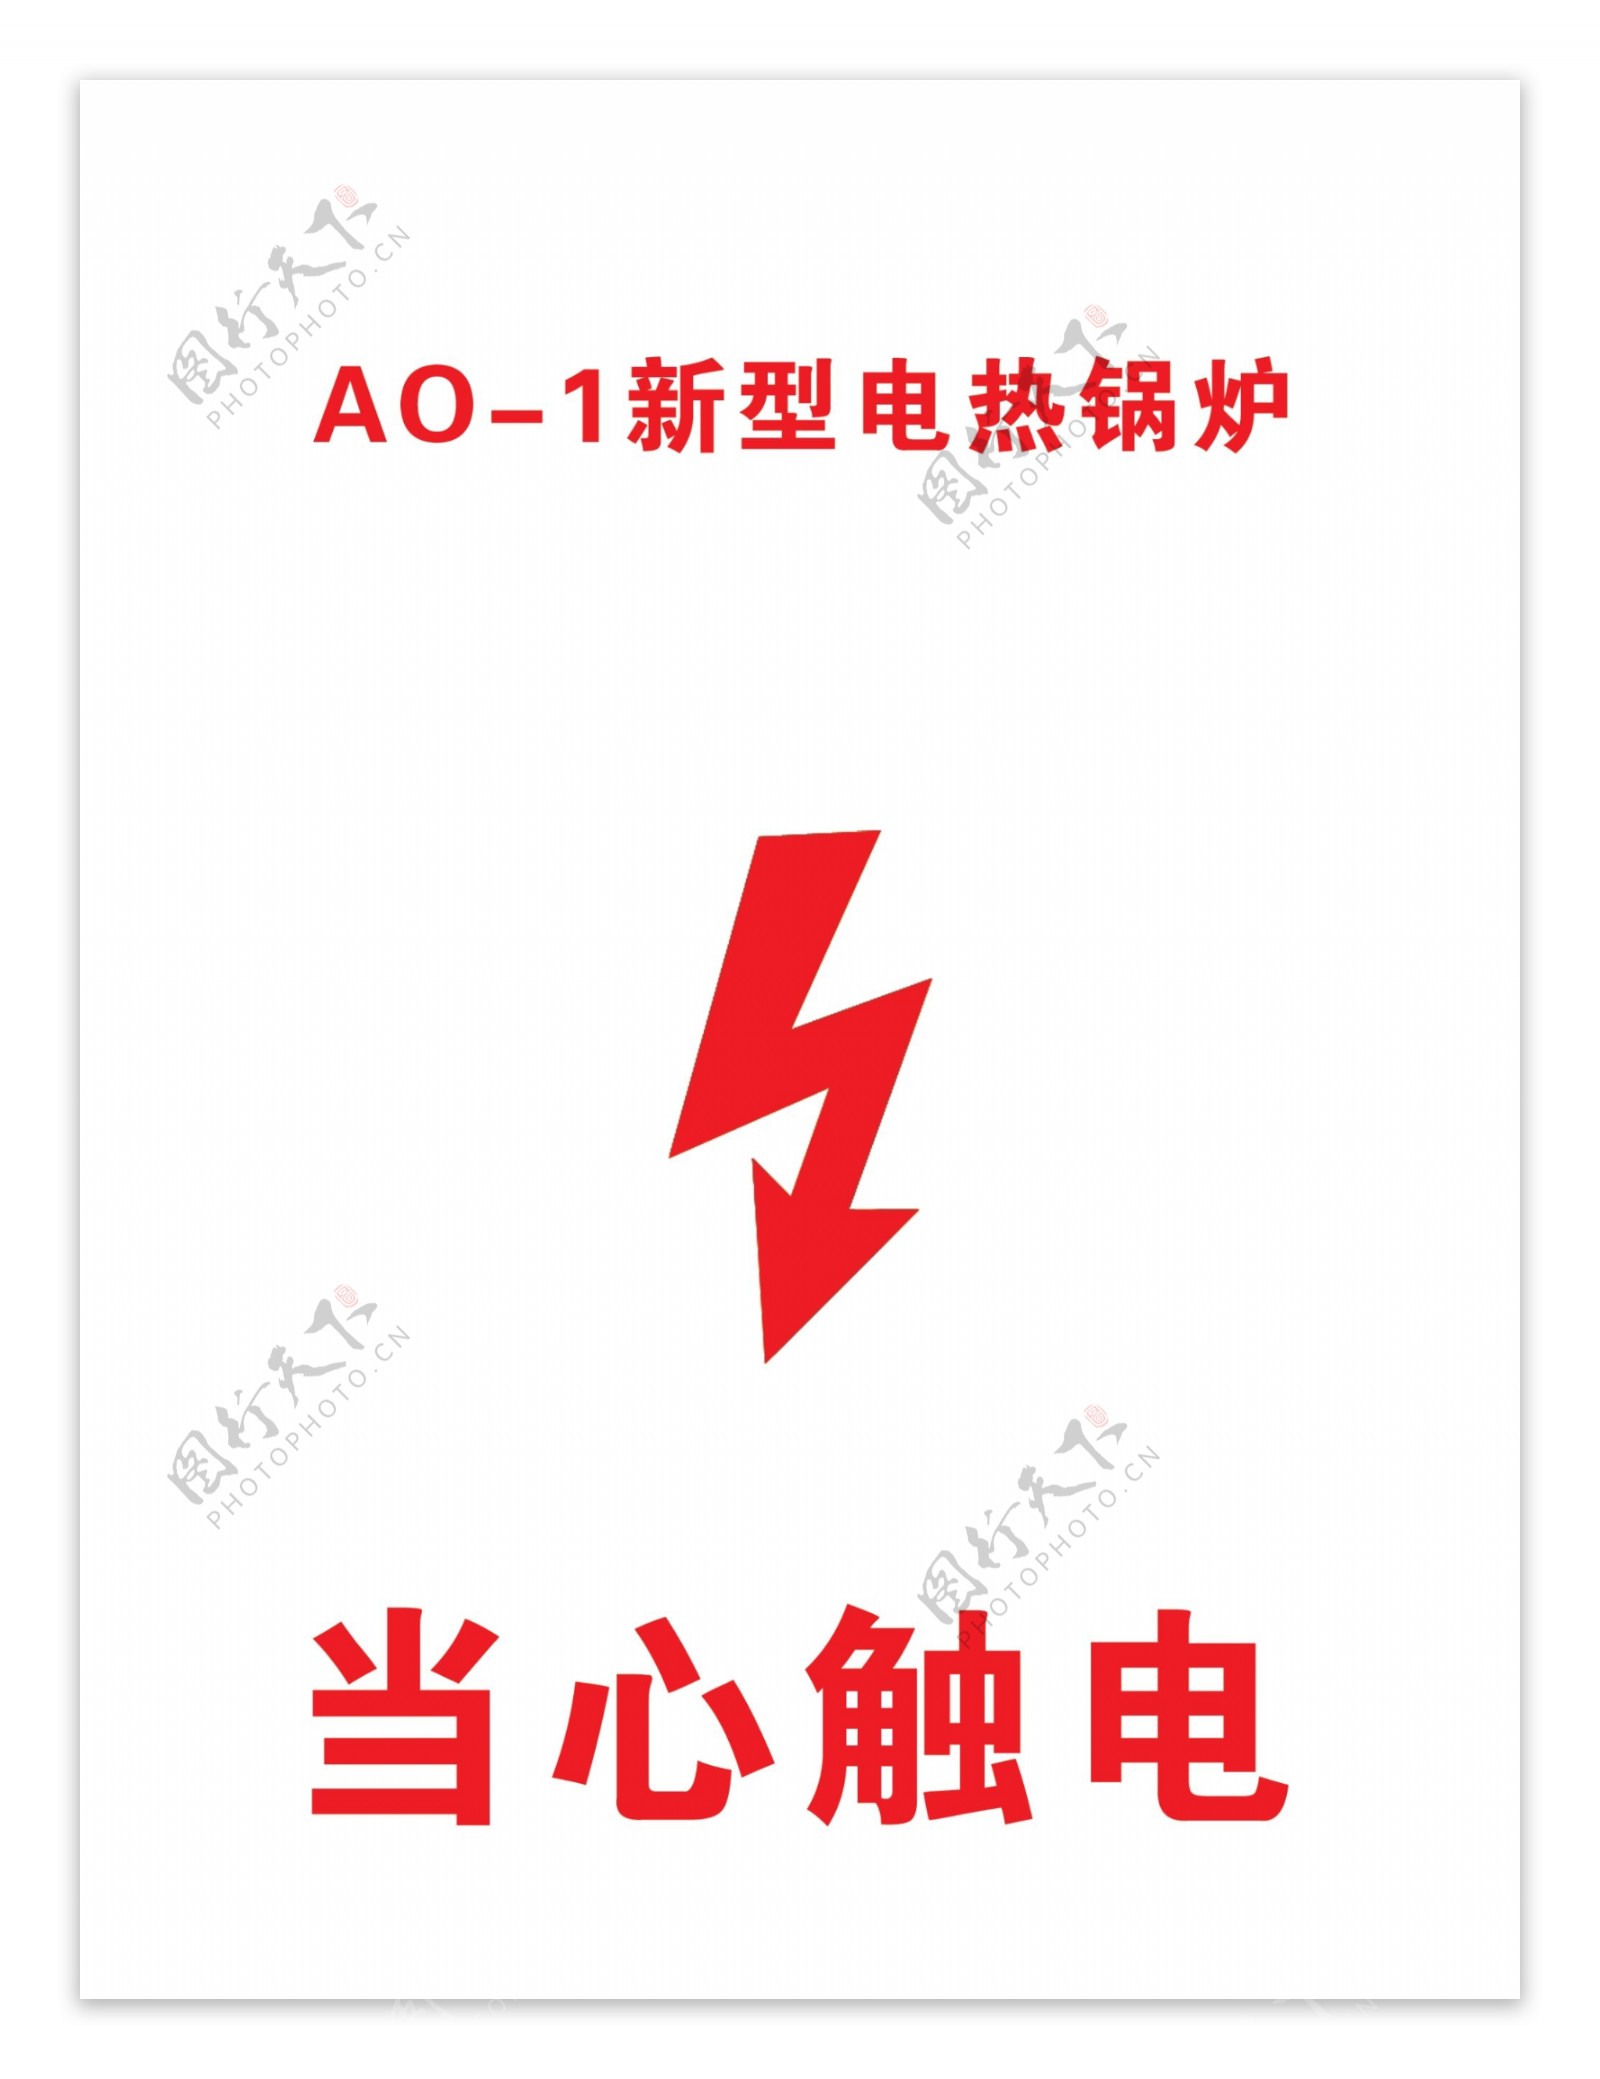 AO1新型电热锅炉图片